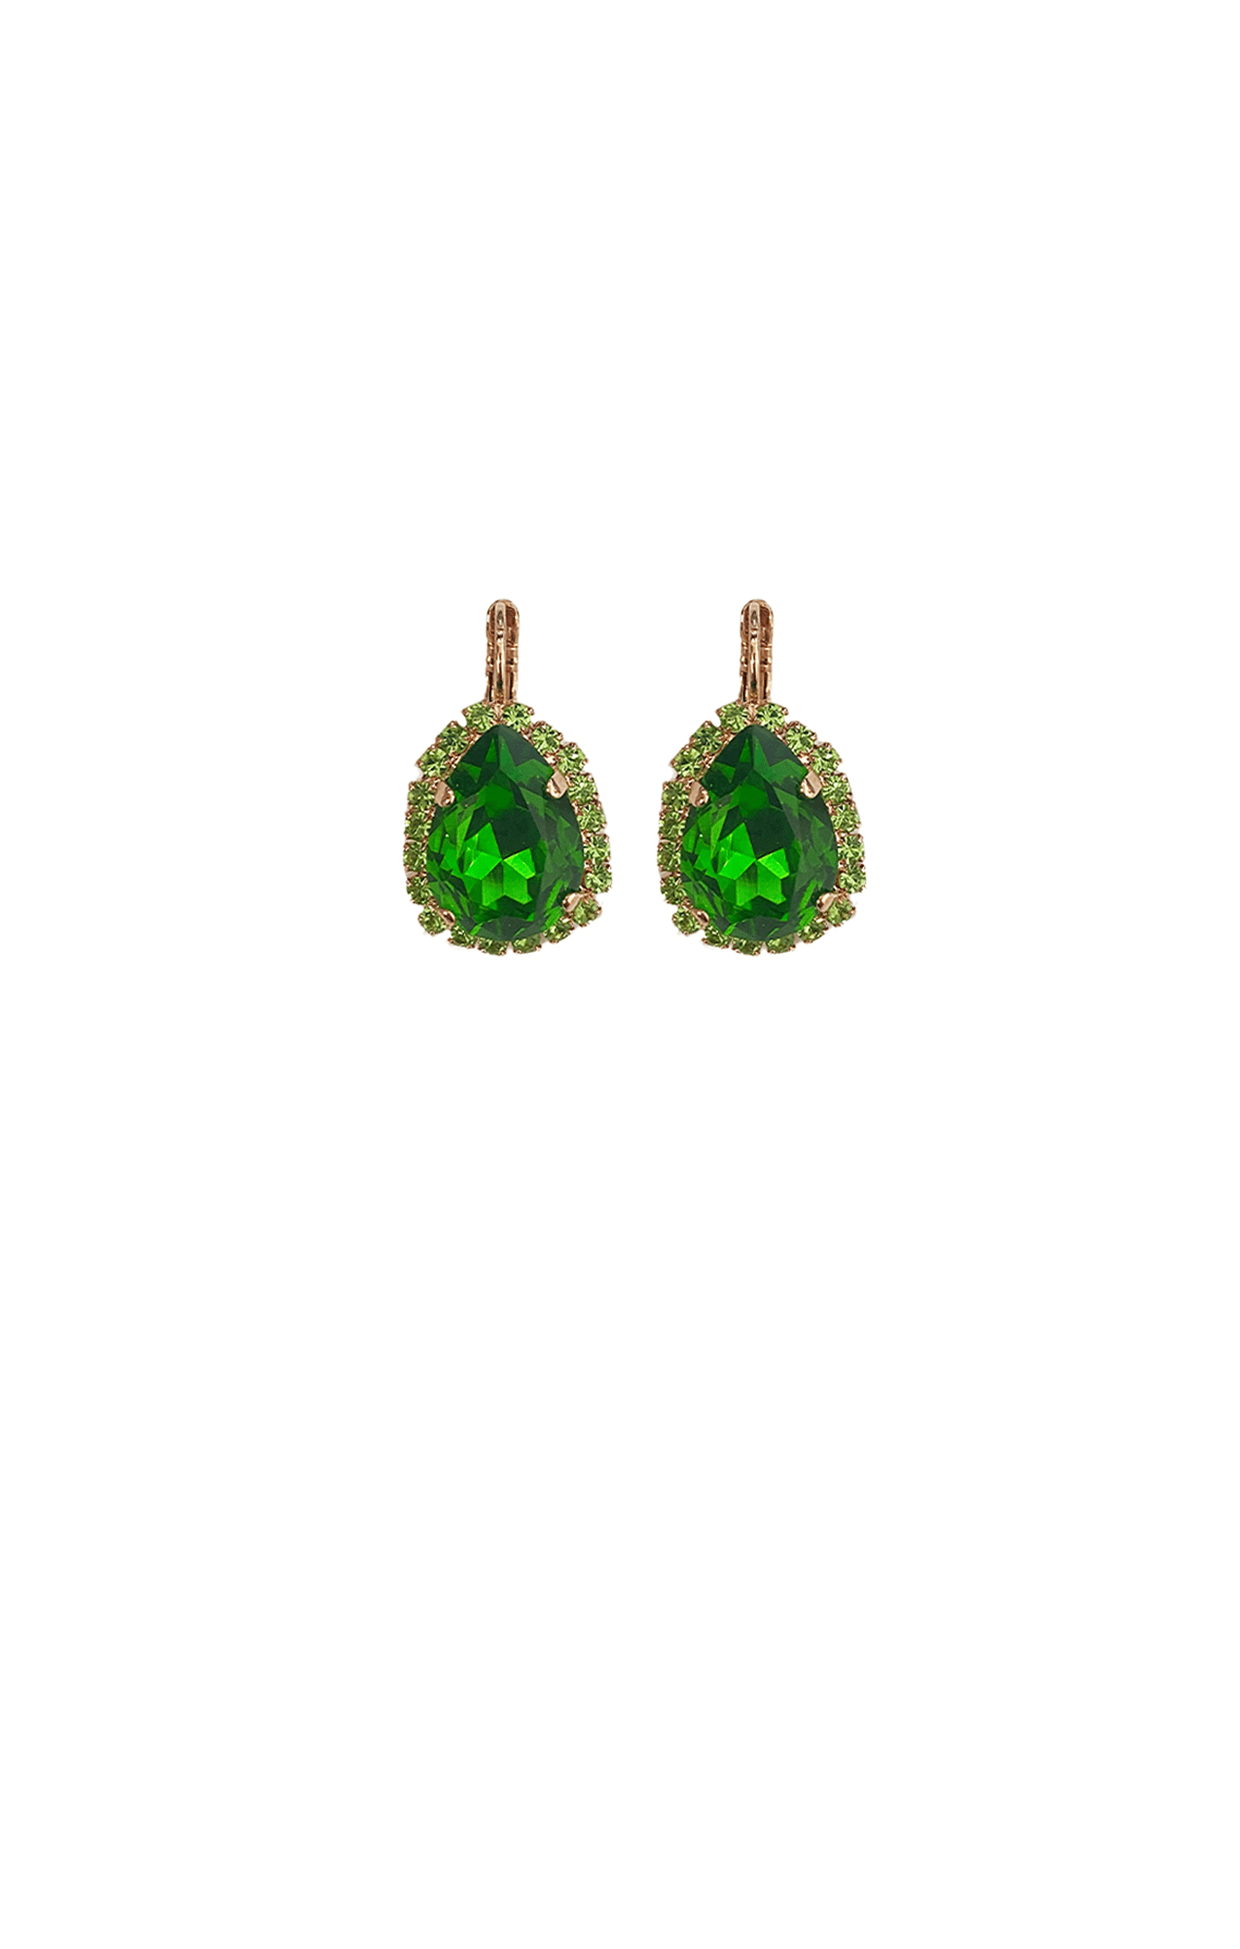 ACCESSORIES Earrings One Size / Green PARIS EARRING IN EMERALD